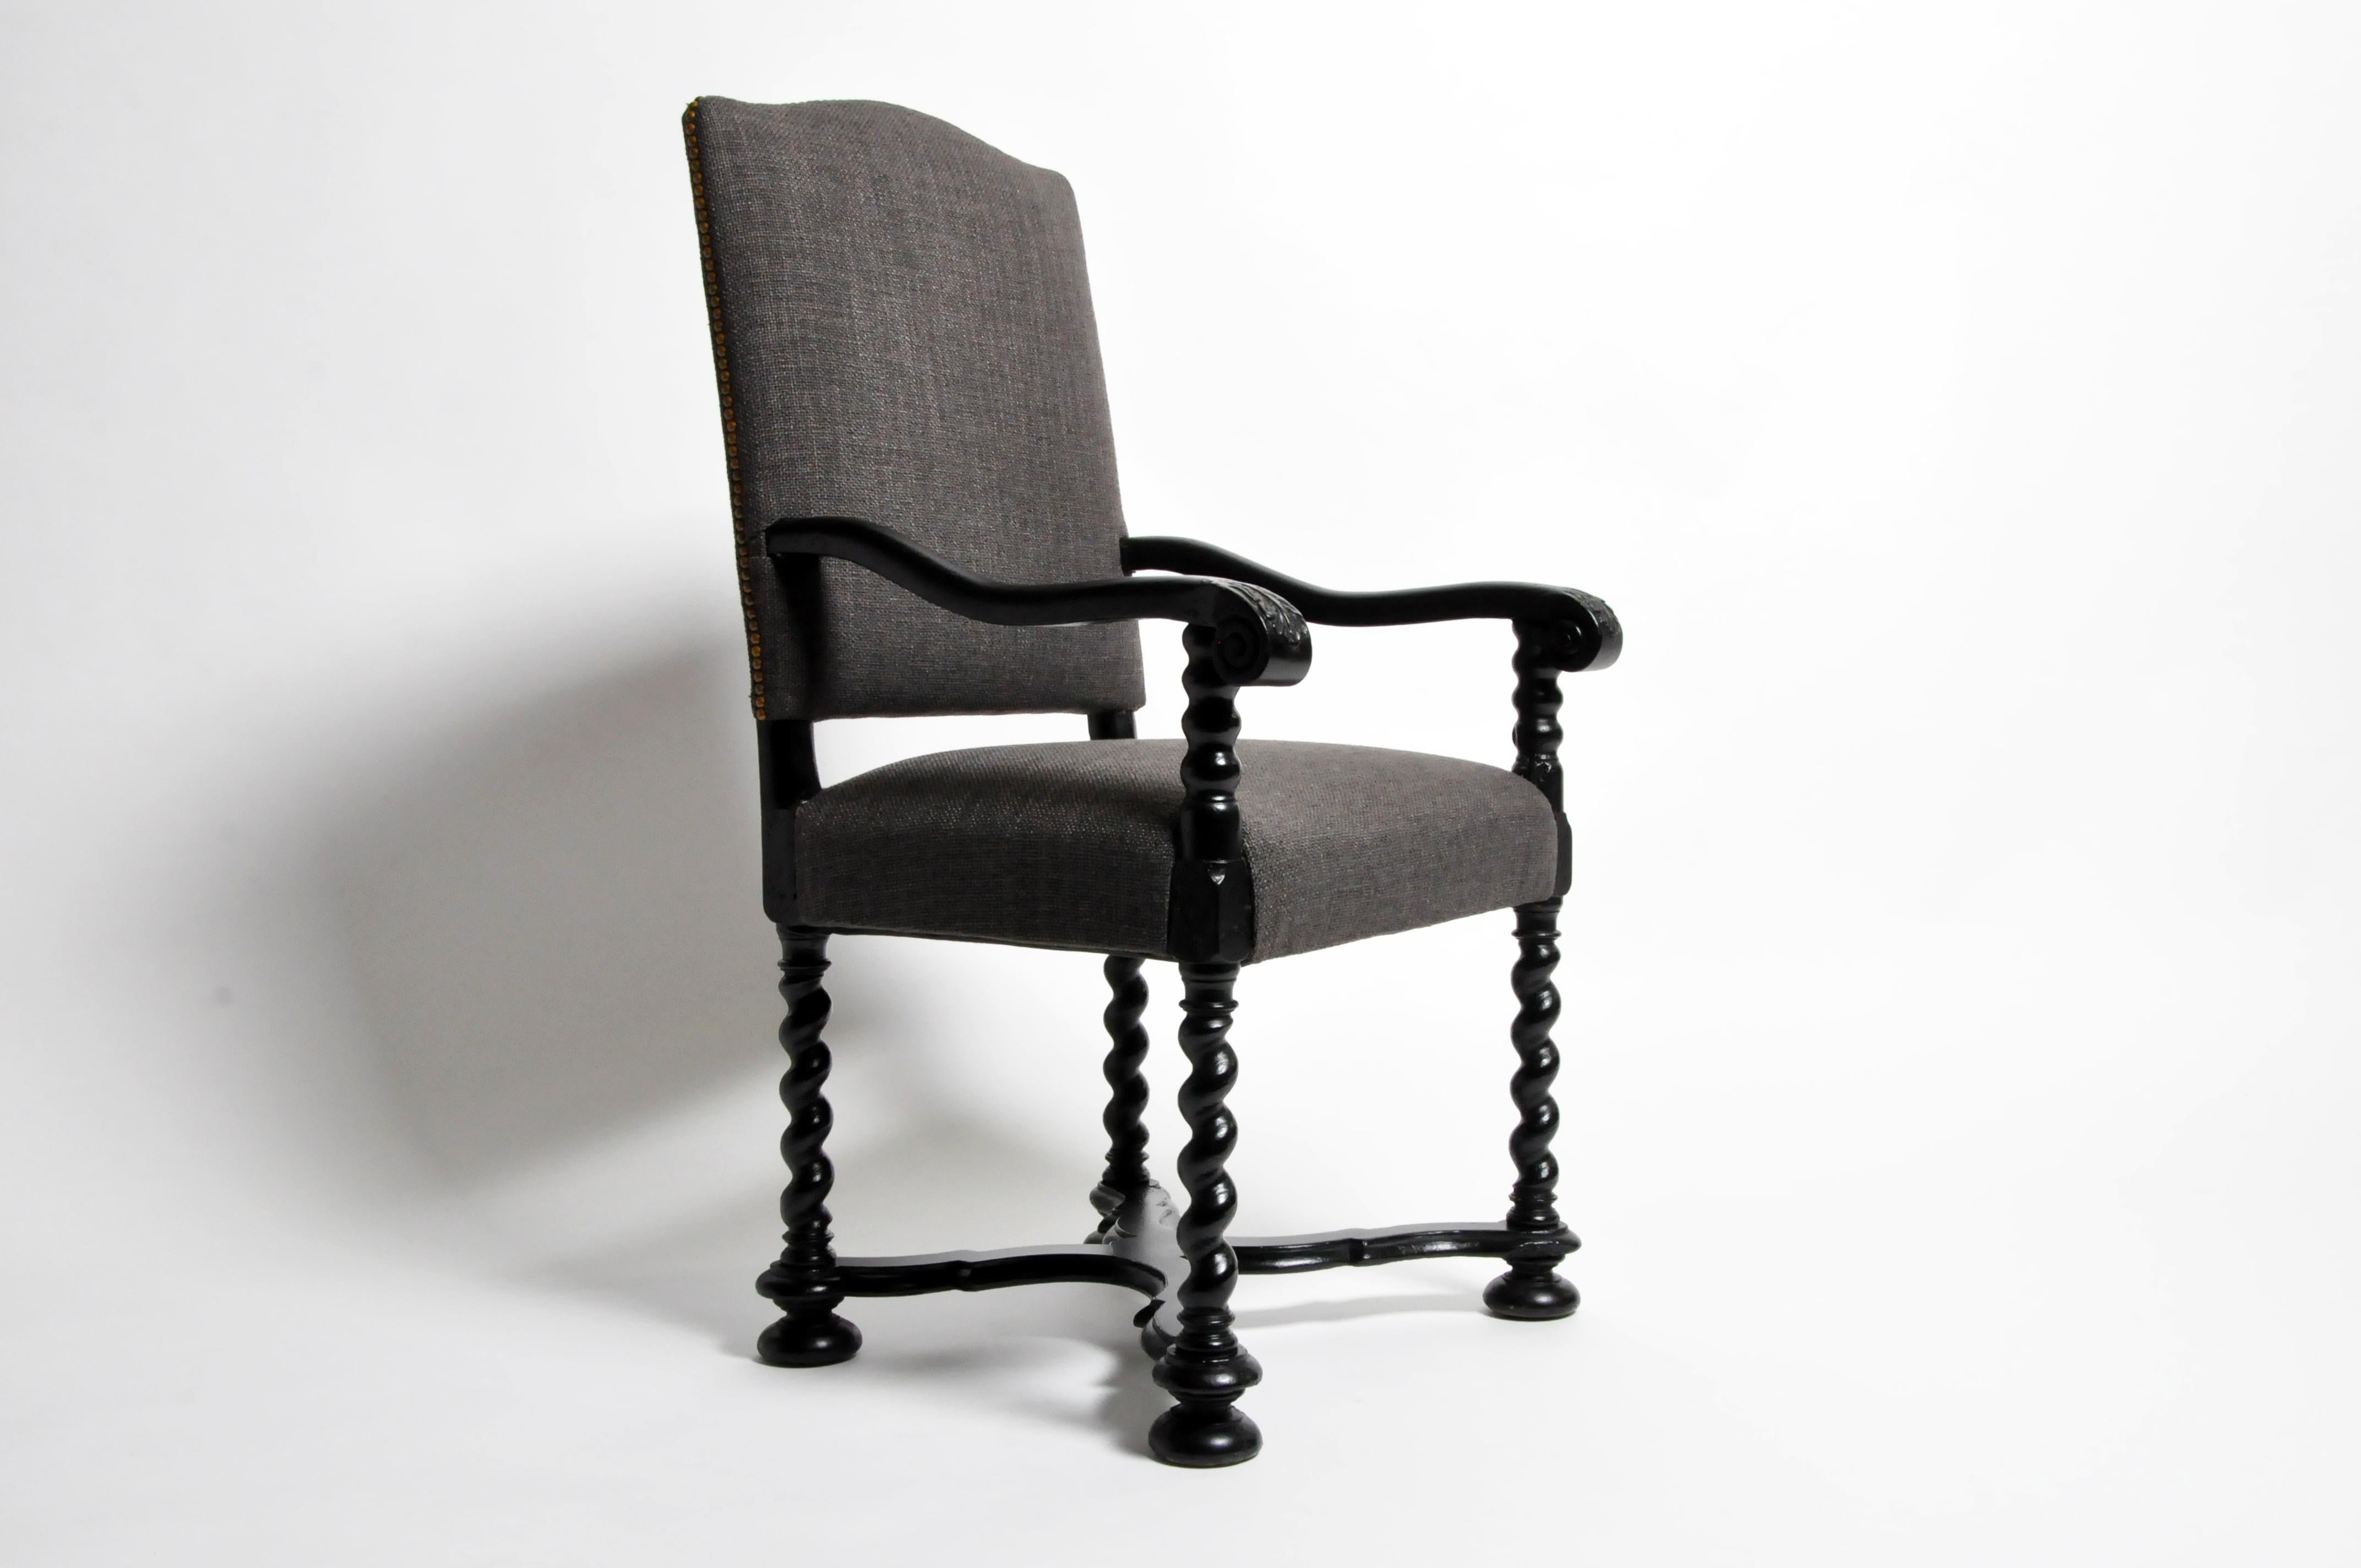 Dieser geschnitzte Sessel hat eine gewölbte und gepolsterte Rückenlehne, die mit einem leinenartigen Stoff mit Nagelkopfverzierung bezogen ist. Der ausgestellte Rahmen aus Nussbaumholz weist verschnörkelte Arme auf gedrechselten Stützen auf, die